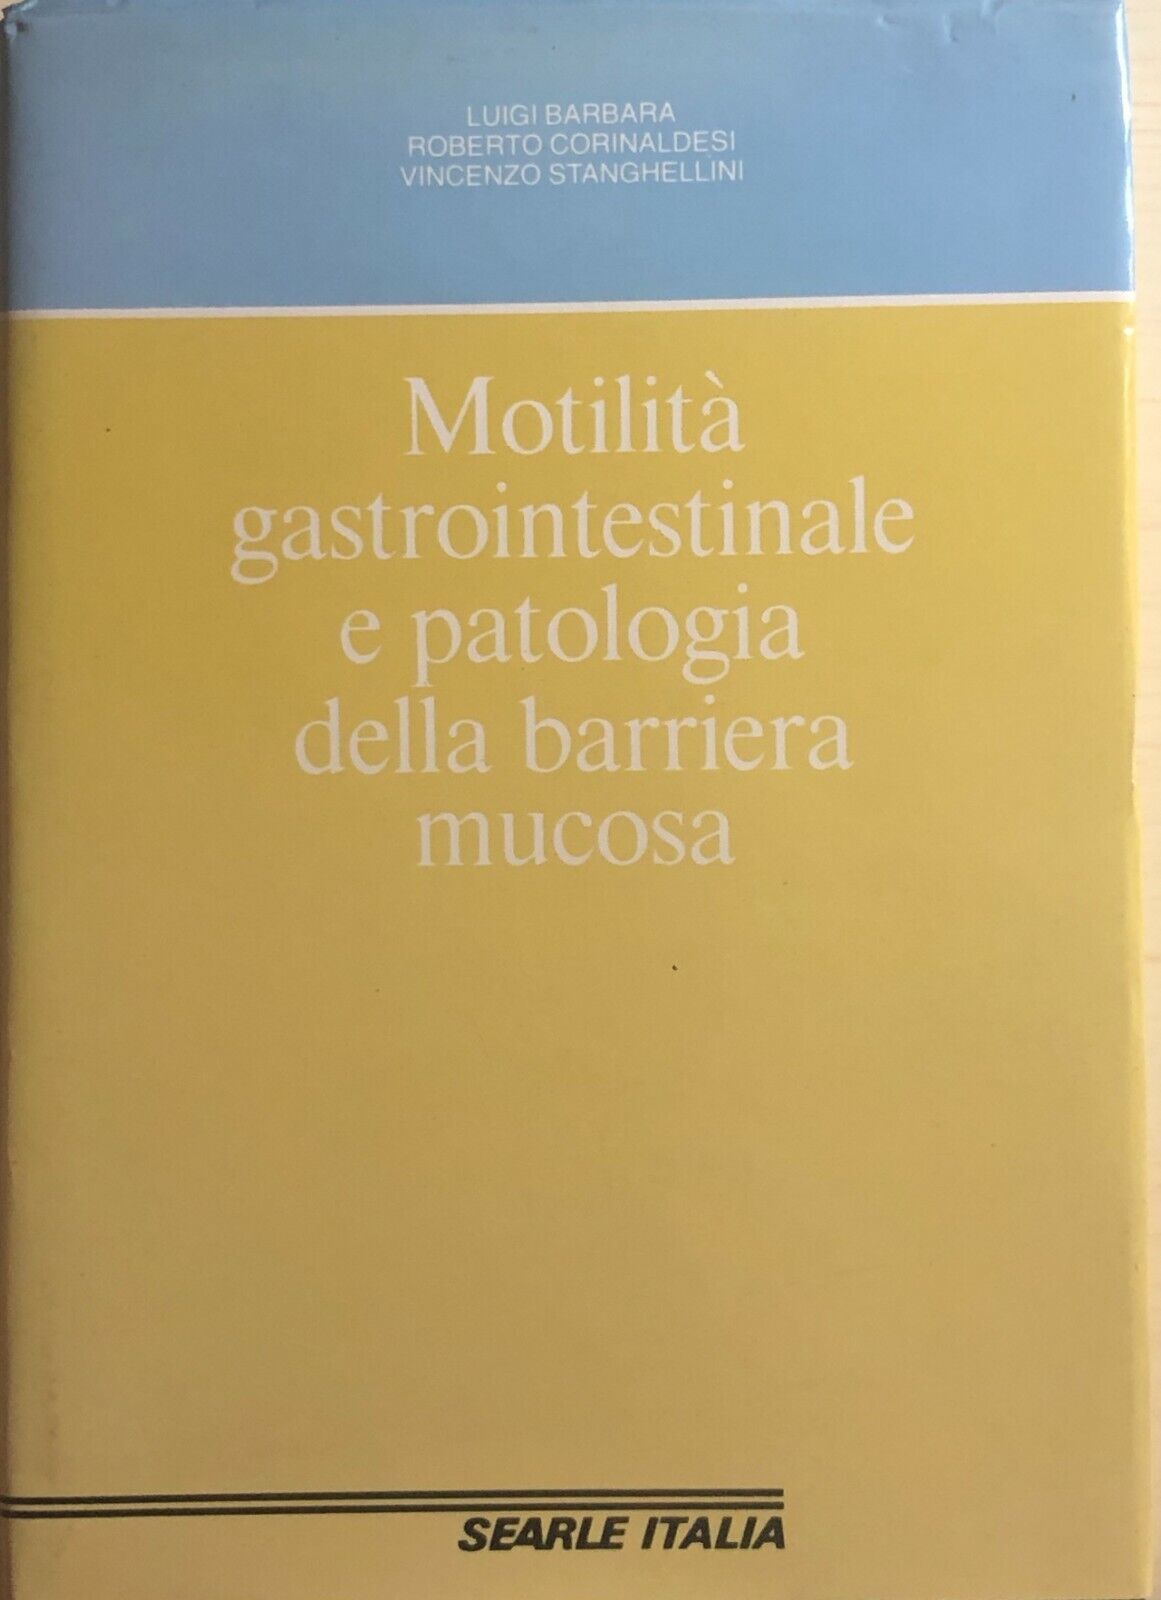 Motilit? gastrointestinale e patologia della barriera mucosa di Aa.vv., 1985, Se